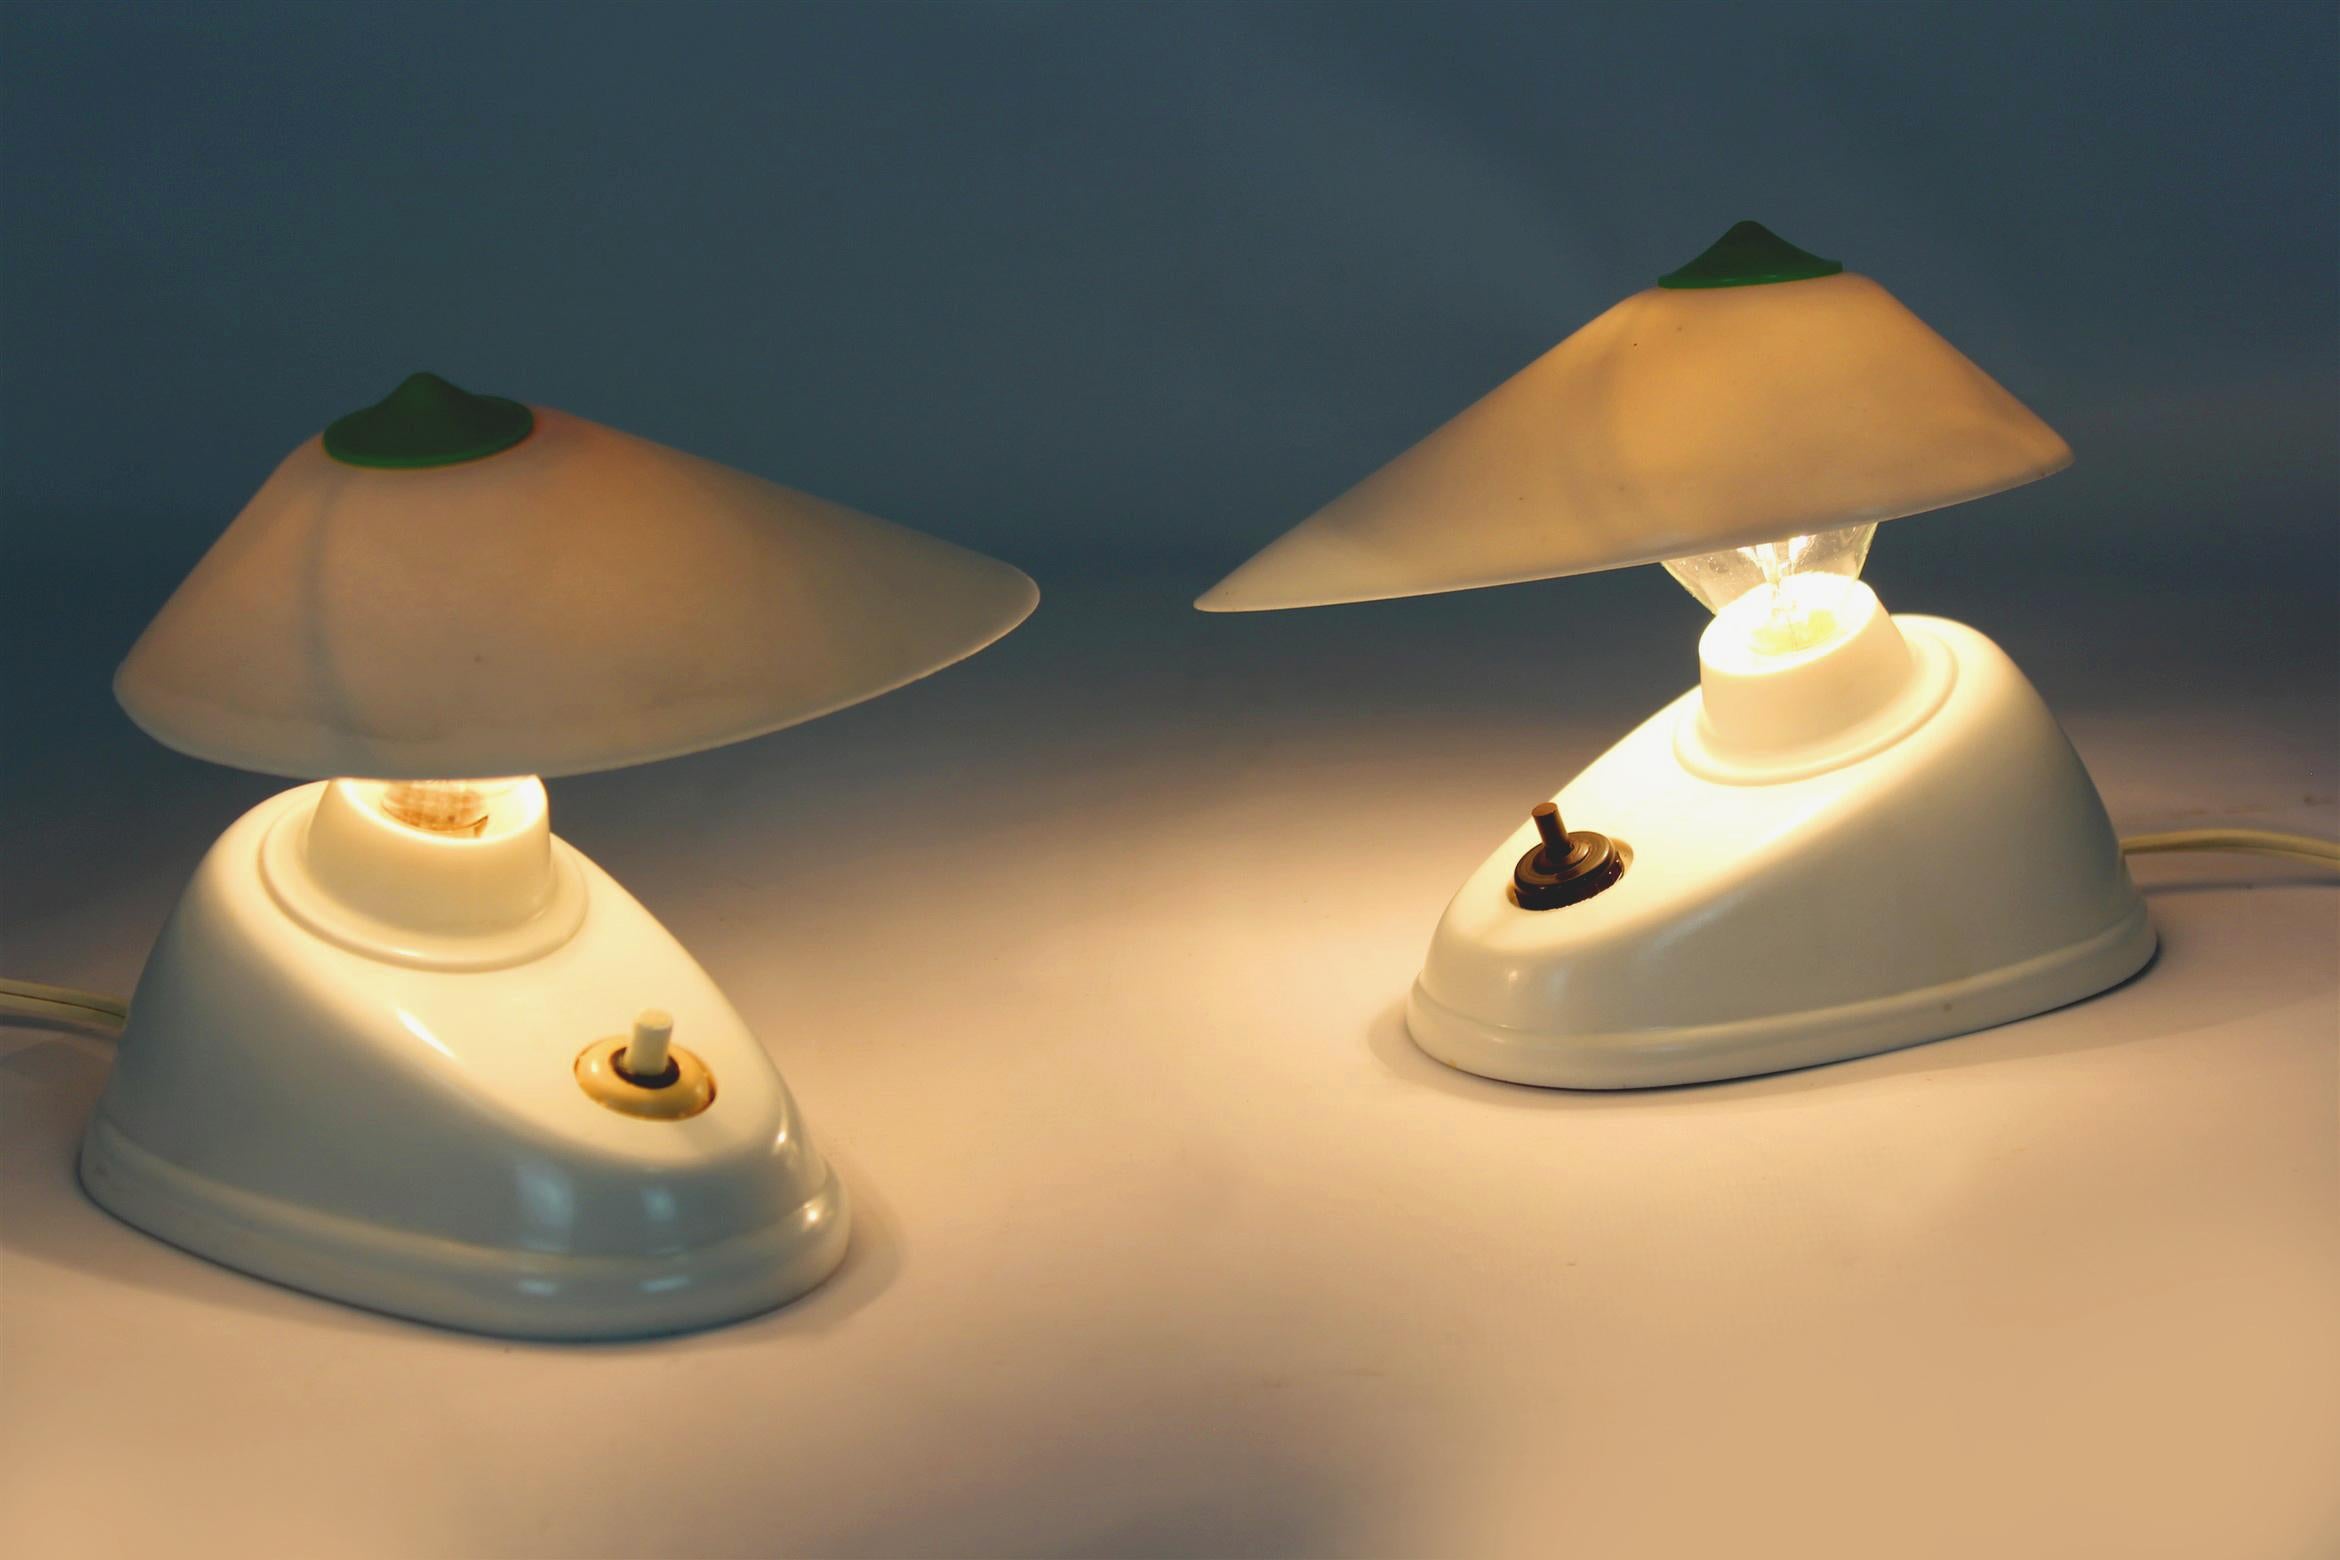 
Ensemble de deux lampes de table en bakélite de style Bauhaus, produites en Tchécoslovaquie dans les années 1940. Forme asymétrique, angle réglable de l'abat-jour. Les lampes portent une désignation de modèle visible (11641) et le logo du fabricant